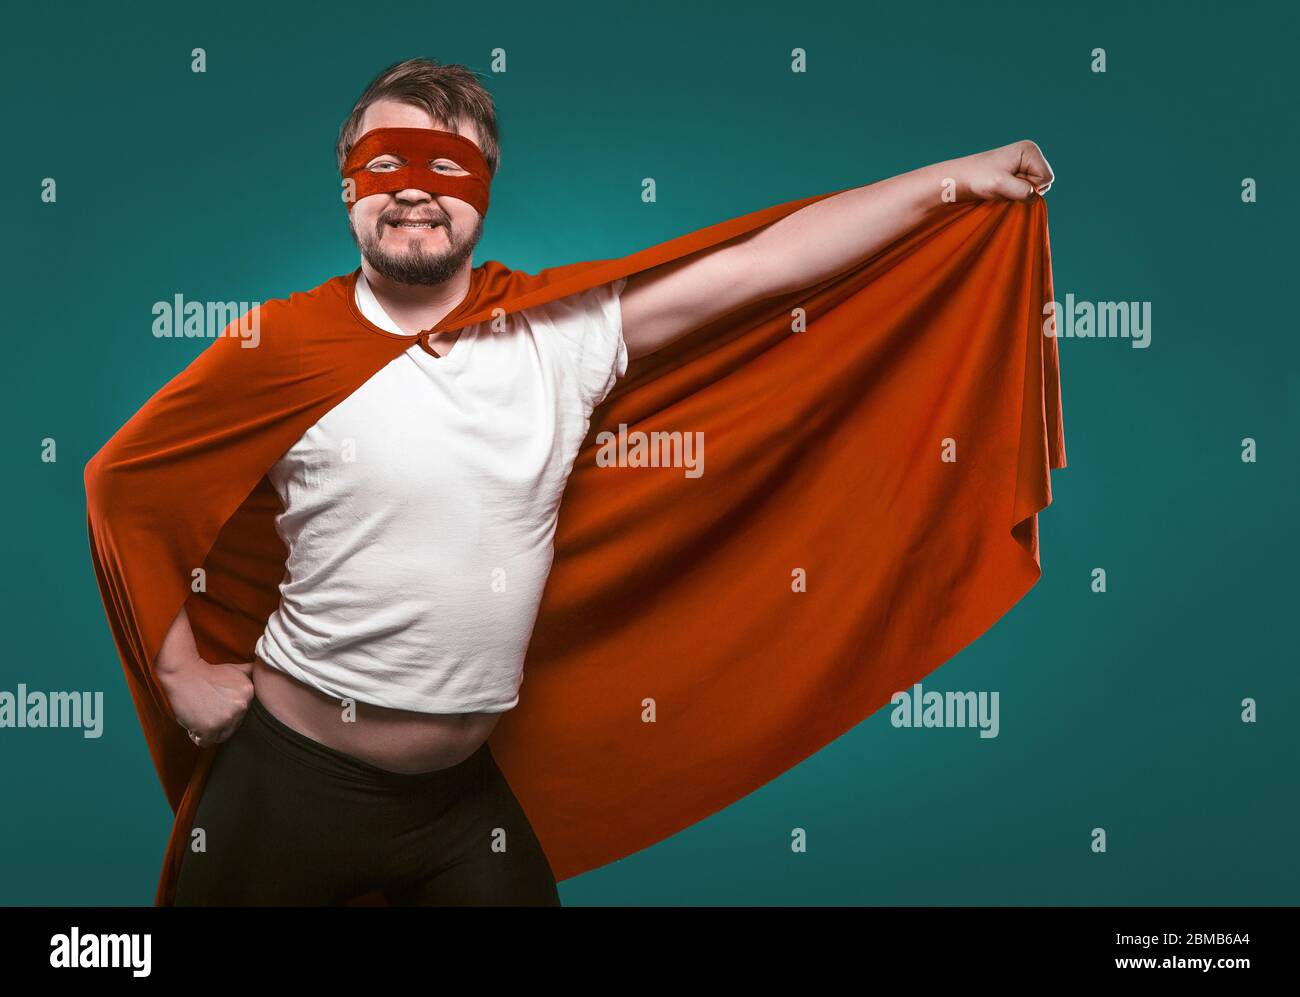 Lustige Super Hero Man Bereit Zu Fliegen, Speichern Welt. Lächelnder Mann In Maske Und Rotem Superhelden Kostüm Hält Seinen Mantel In Der Hand Posiert Auf Biscaya Green Stockfoto